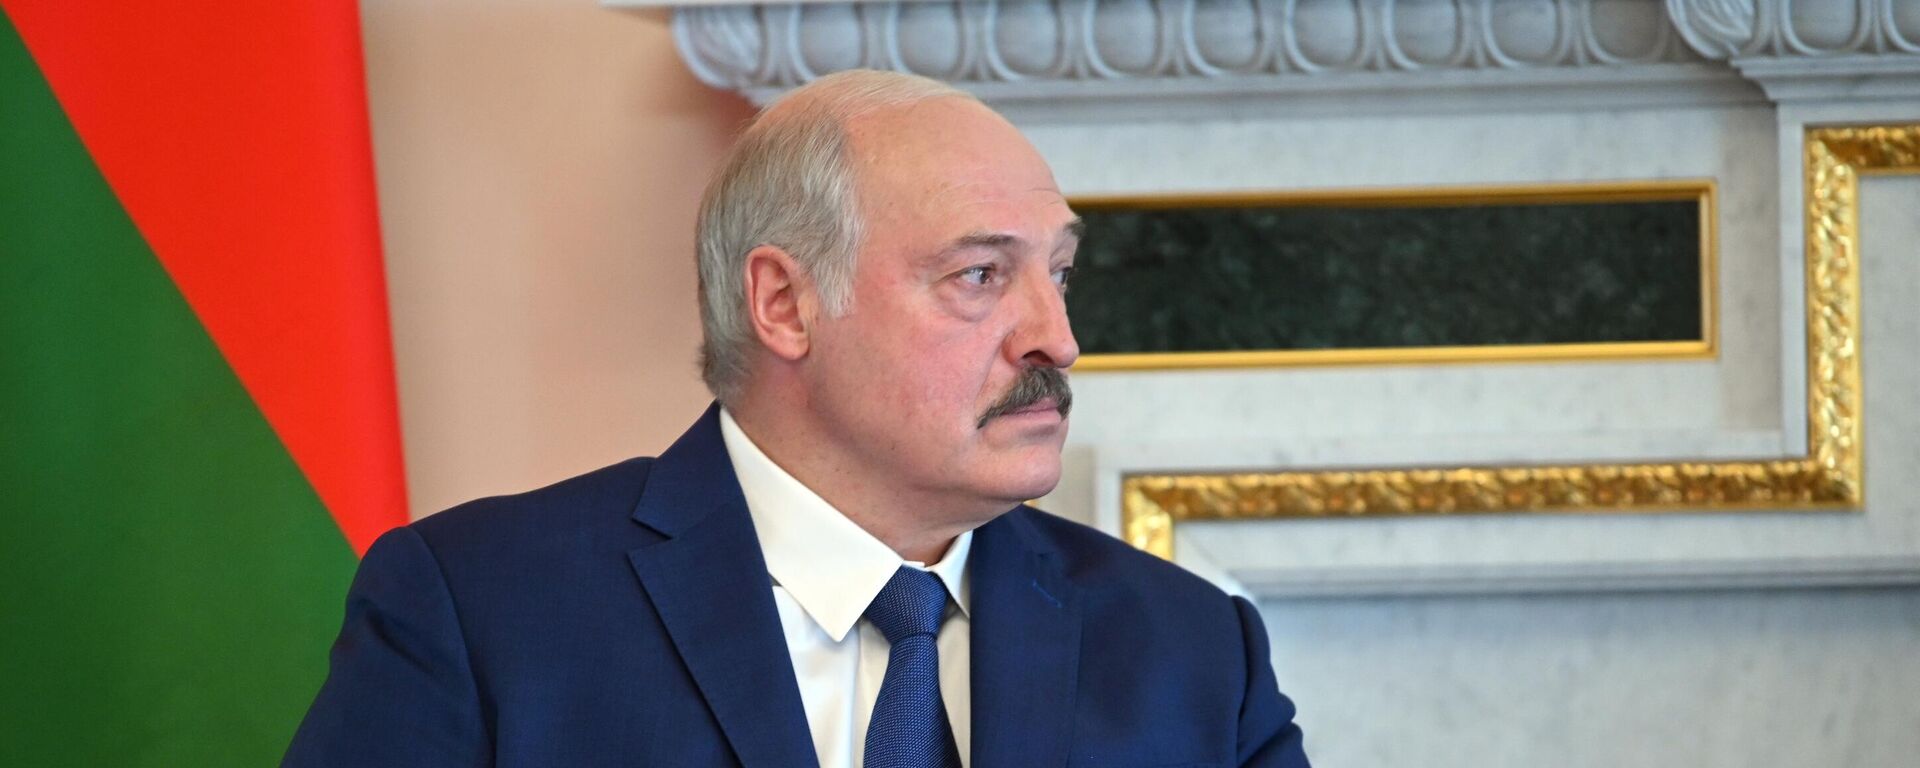 Закрыть каждый метр: Лукашенко жестко отреагировал на ЧП на границе с Литвой - Sputnik Латвия, 1920, 05.08.2021